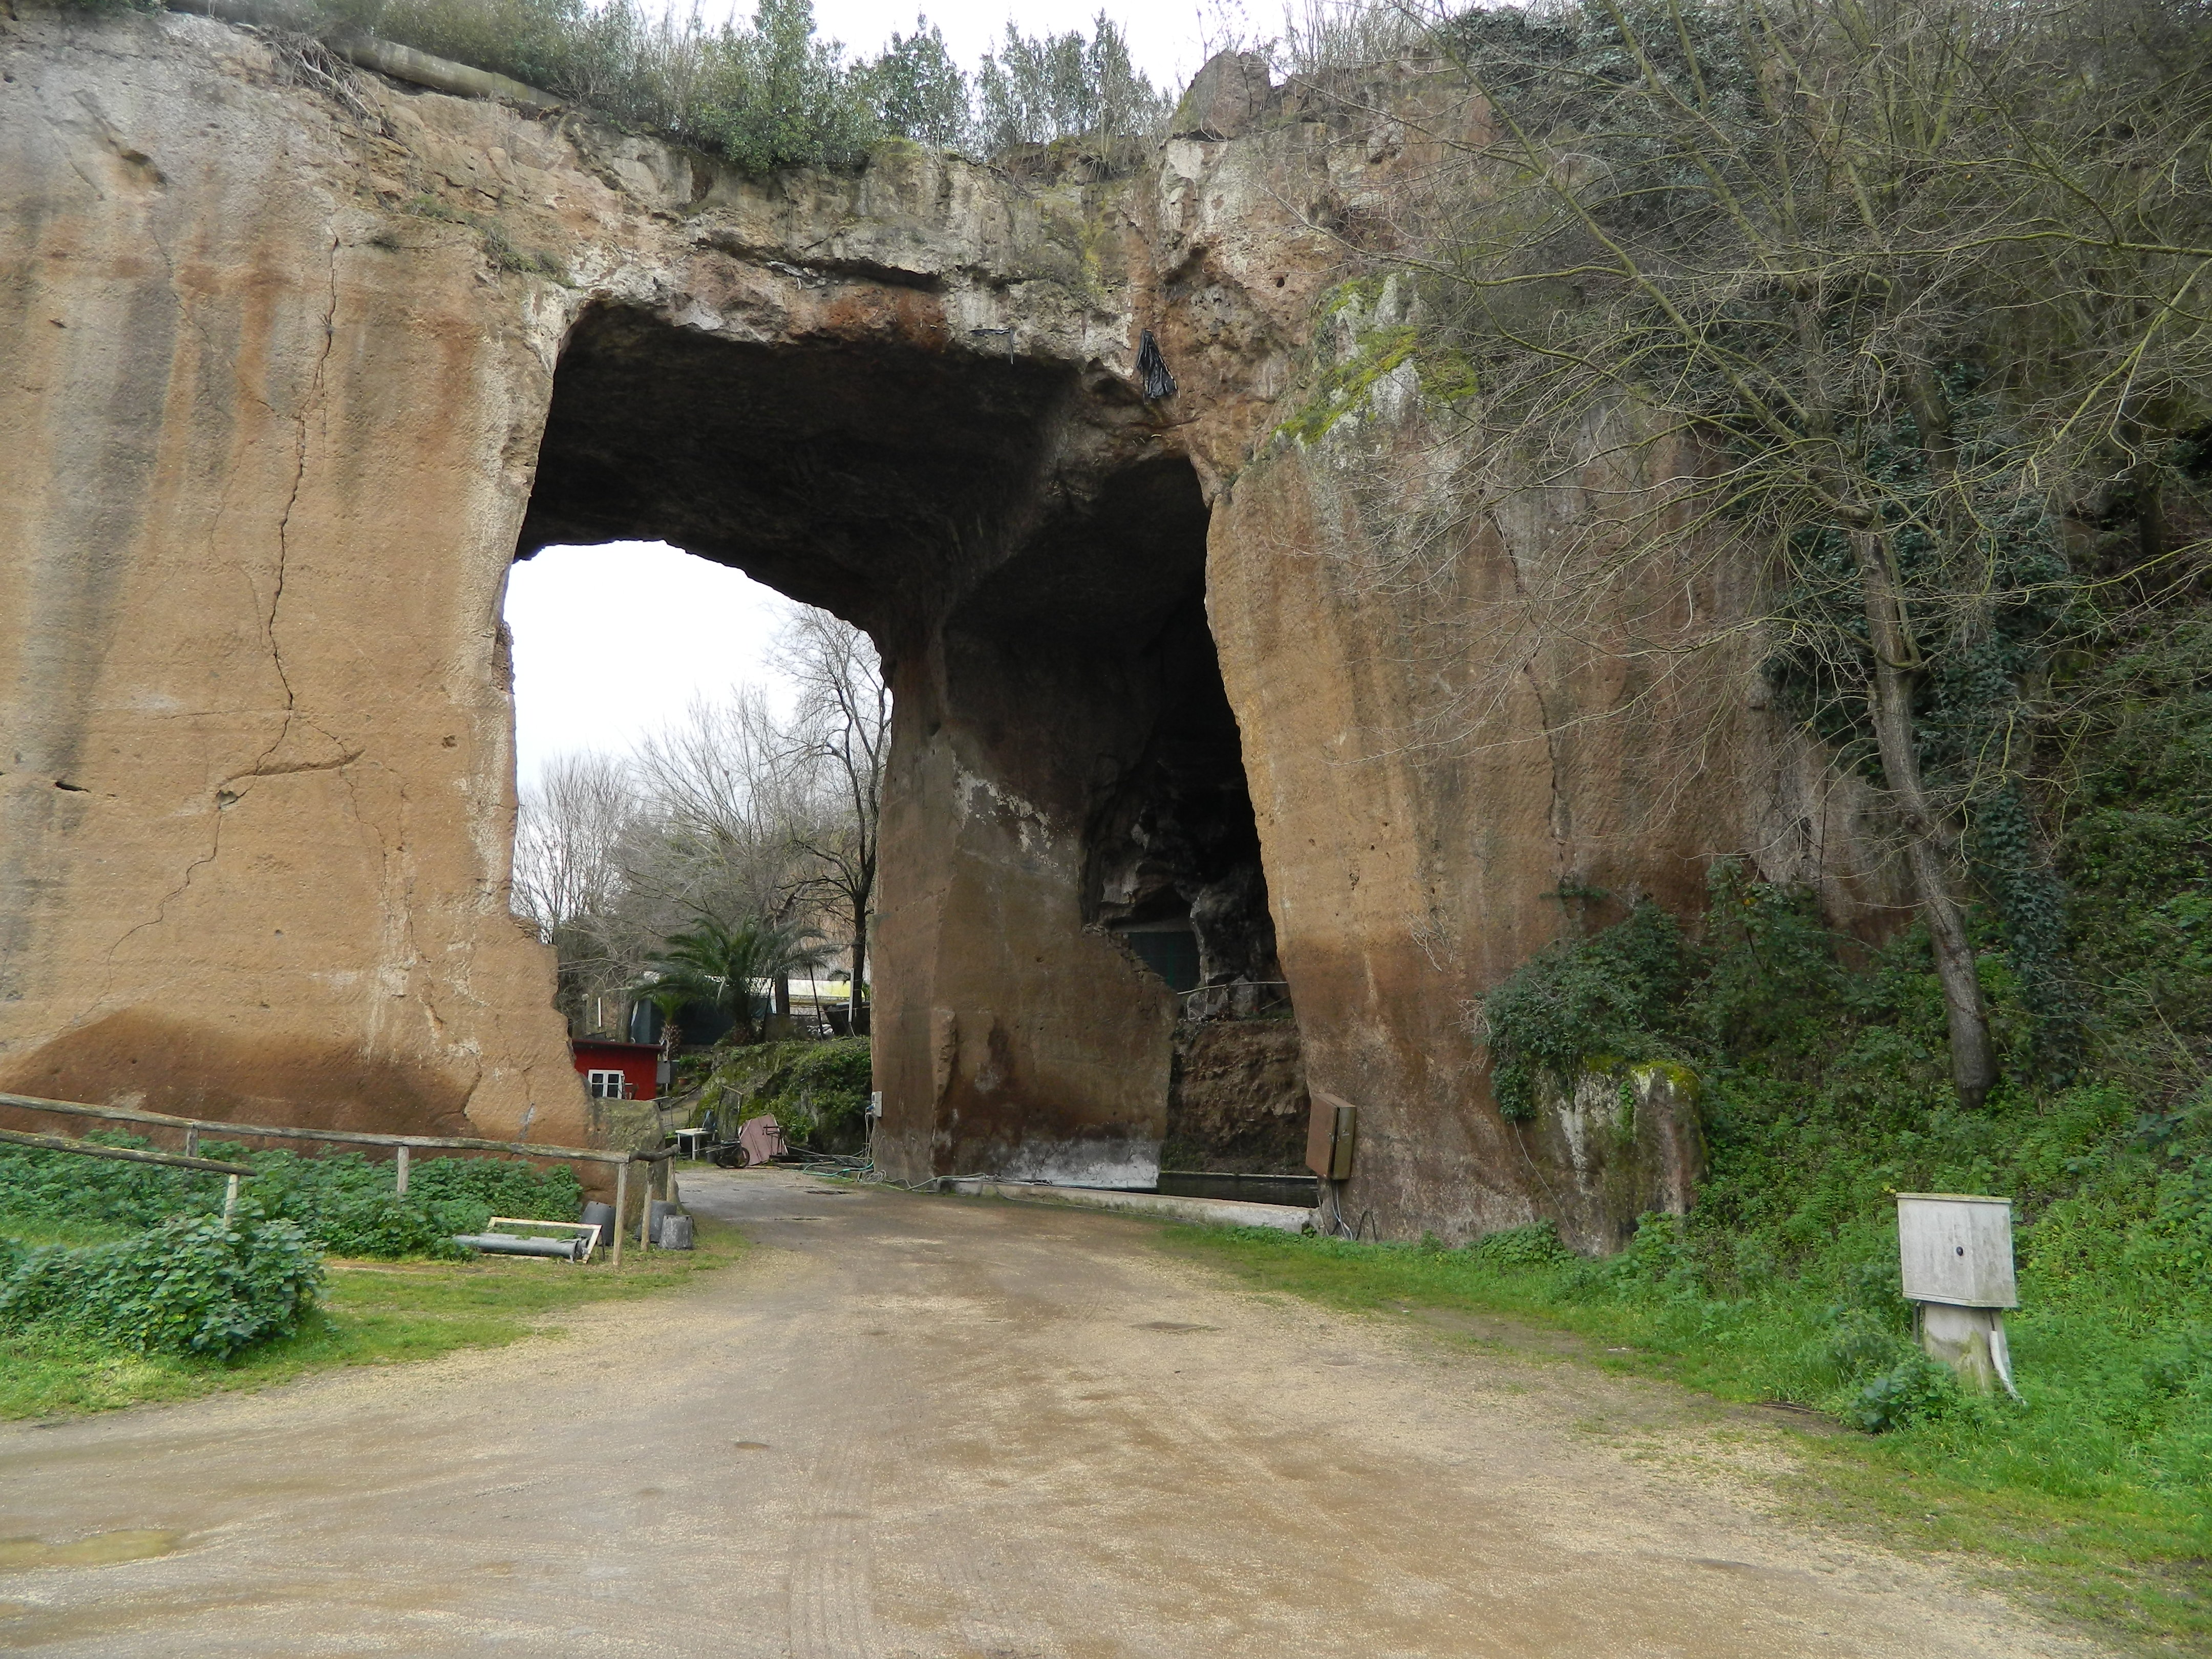 Visita guidata lungo i sentieri della Riserva Naturale Valle dell’Aniene - Le cave di Tor cervara